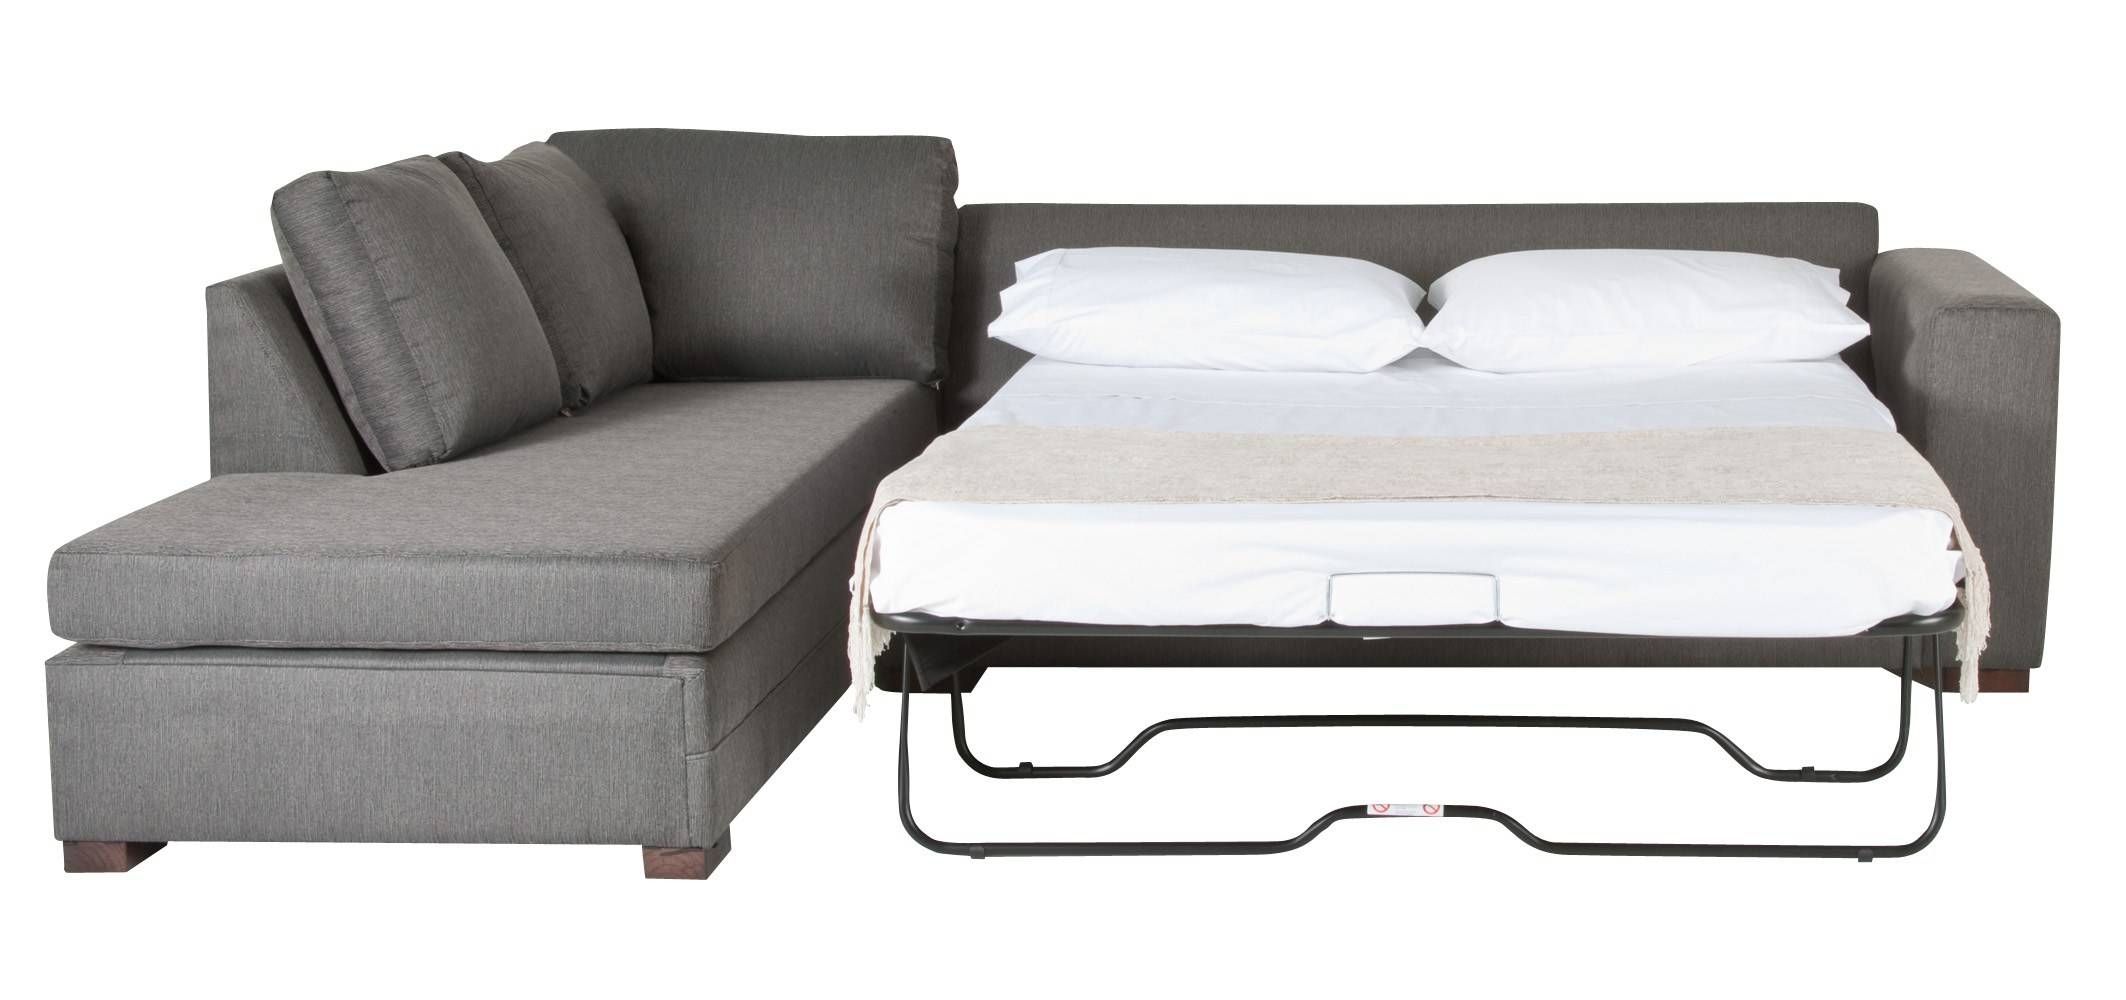 bauhaus sleeper sofa replacement mattress